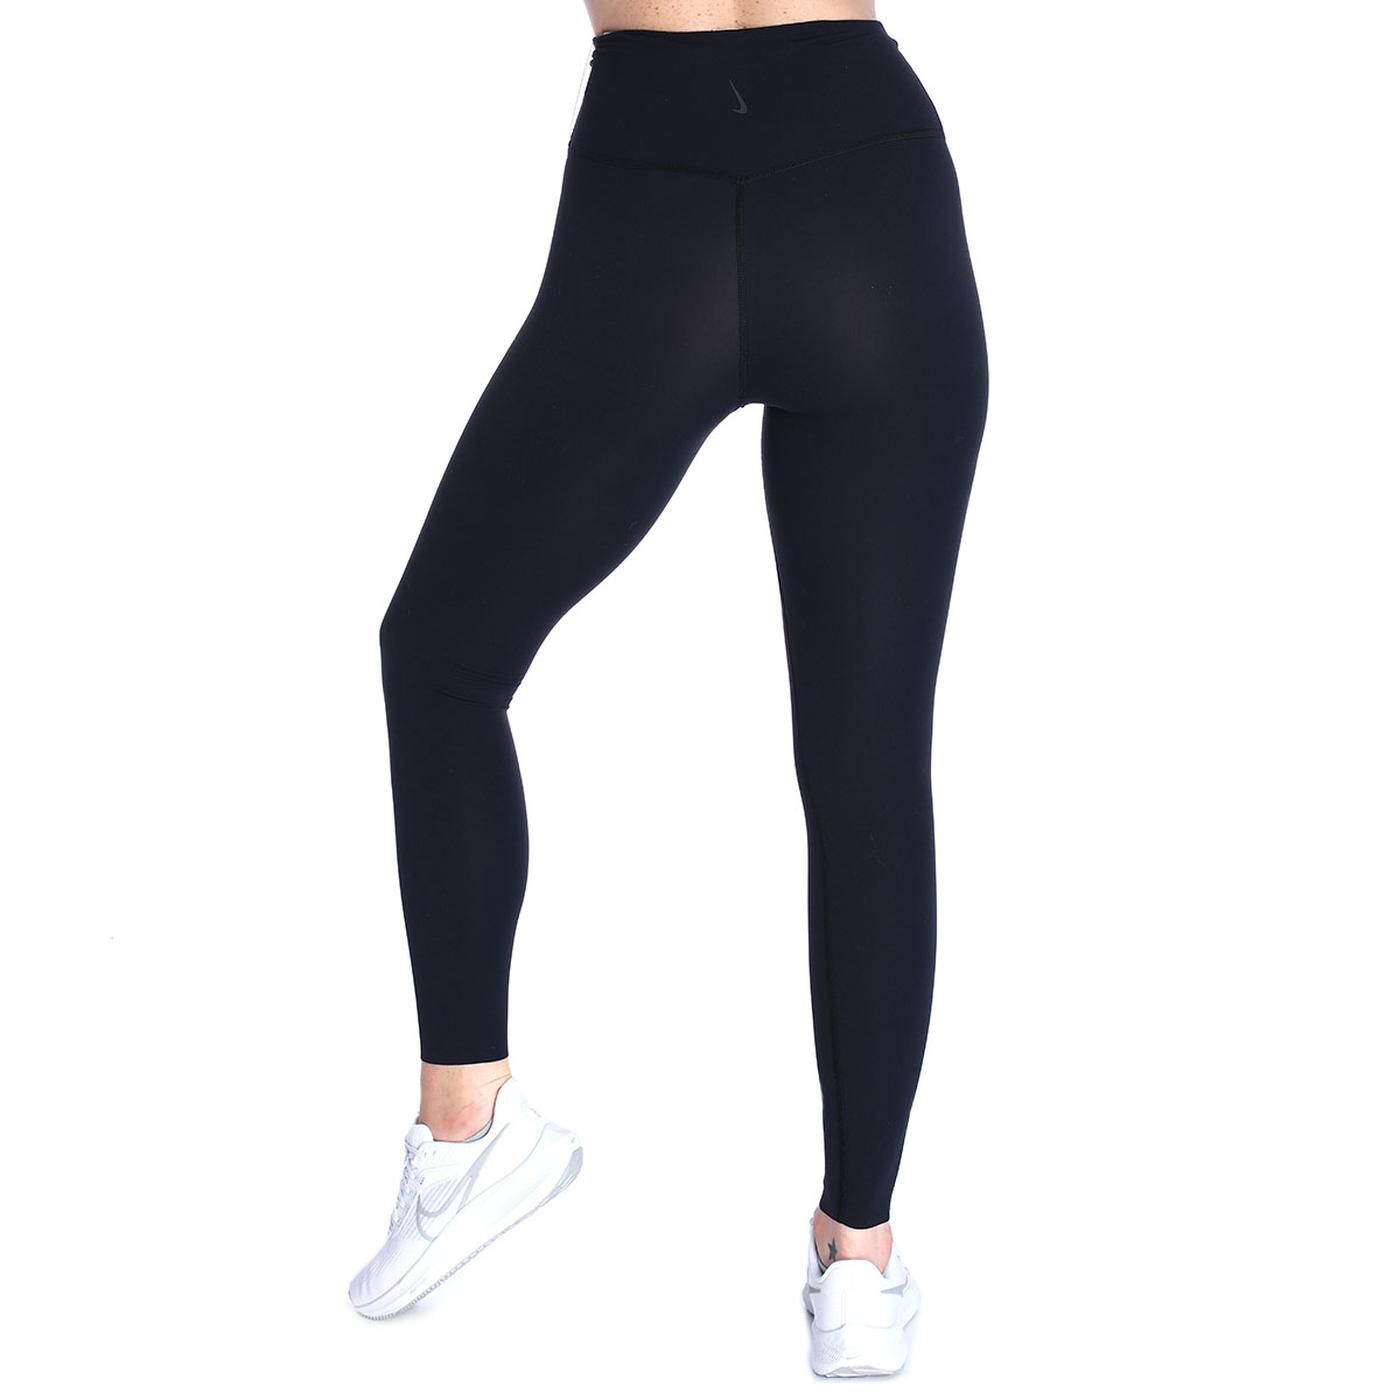 Женские тайтсы Nike Yoga Luxe 7/8 Antrenman Tayt CJ3801-010 для тренировок  по цене 5820.0